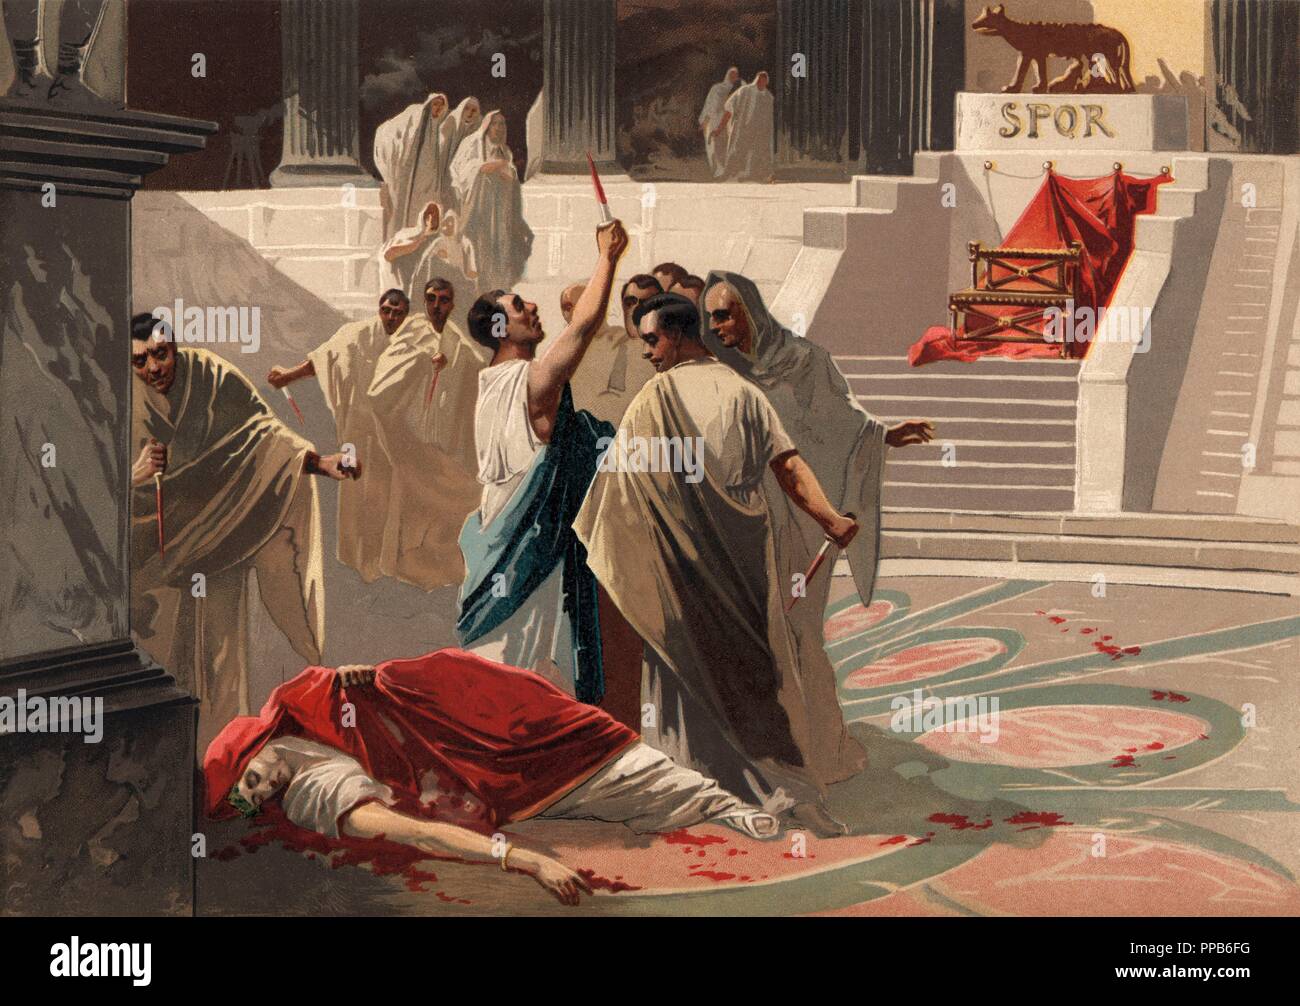 Historia. Roma. Asesinato y muerte de Cayo Julio César (12 ac-44 ac), militar y político romano, el 15 de marzo del año 44 ac. Grabado de 1896. Stock Photo